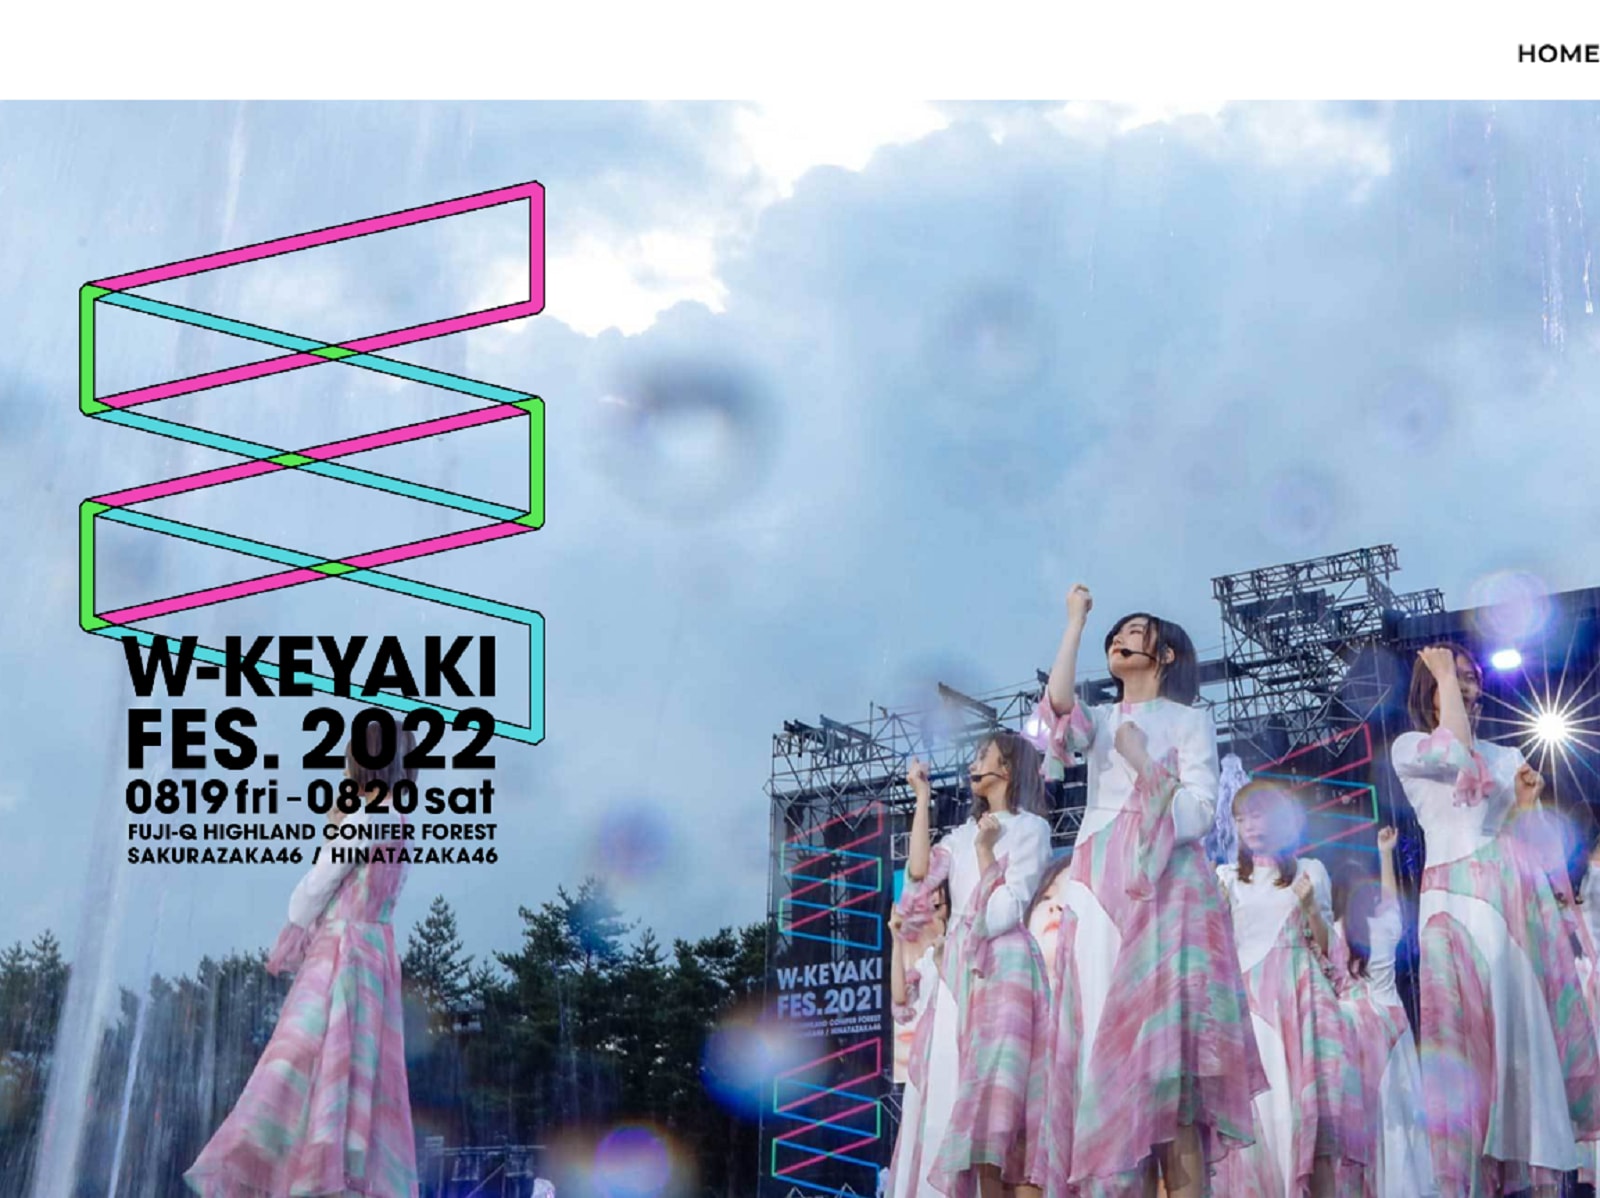 8月19・20日に開催された櫻坂46のライブ「W-KEYAKI FES.2022」